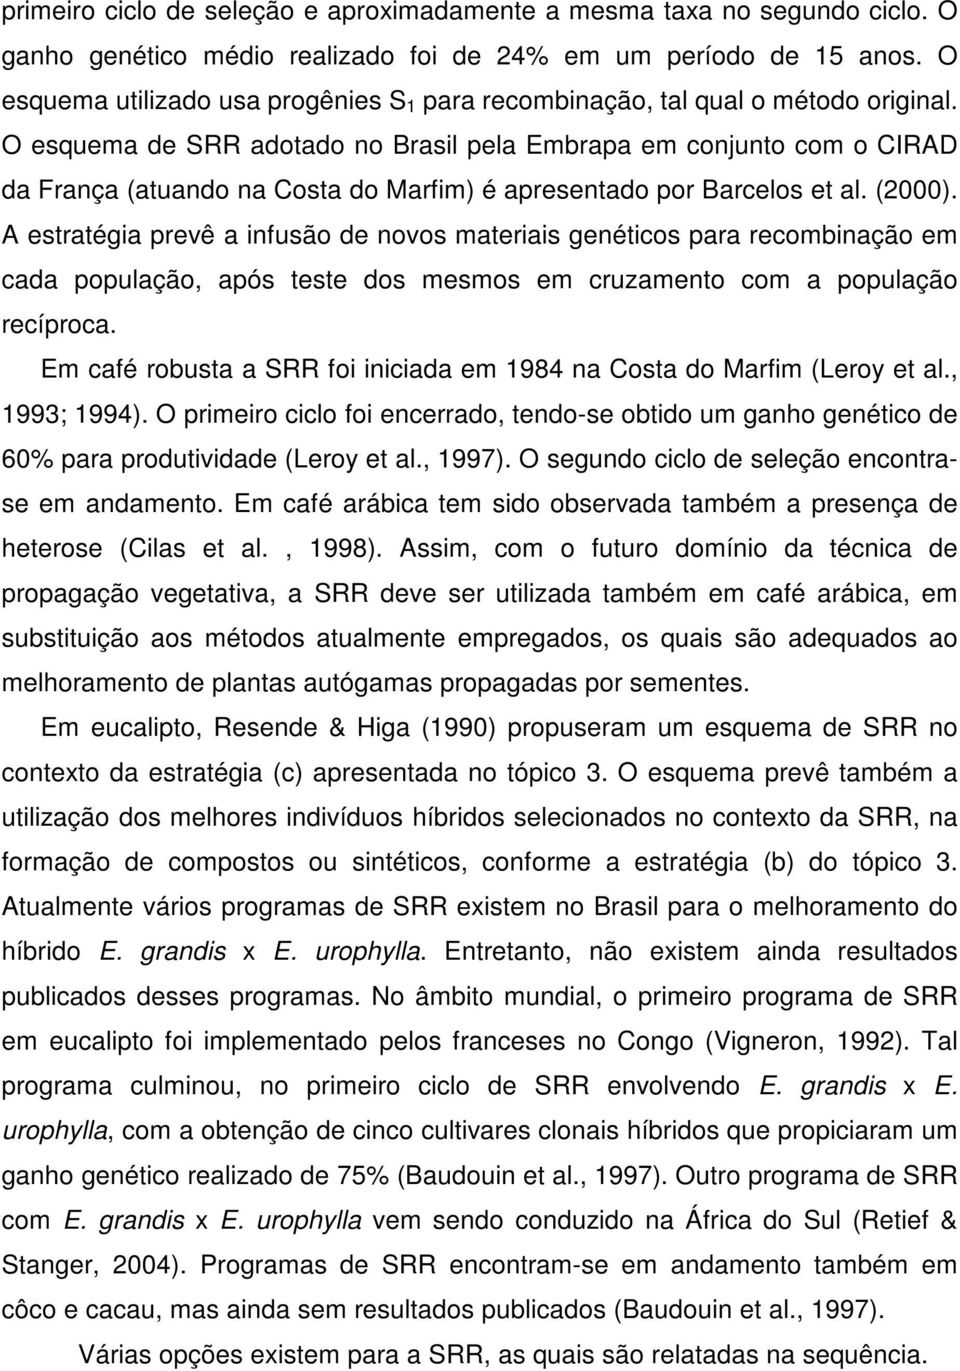 O esquema de SRR adotado no Brasil pela Embrapa em conjunto com o CIRAD da França (atuando na Costa do Marfim) é apresentado por Barcelos et al. (2000).